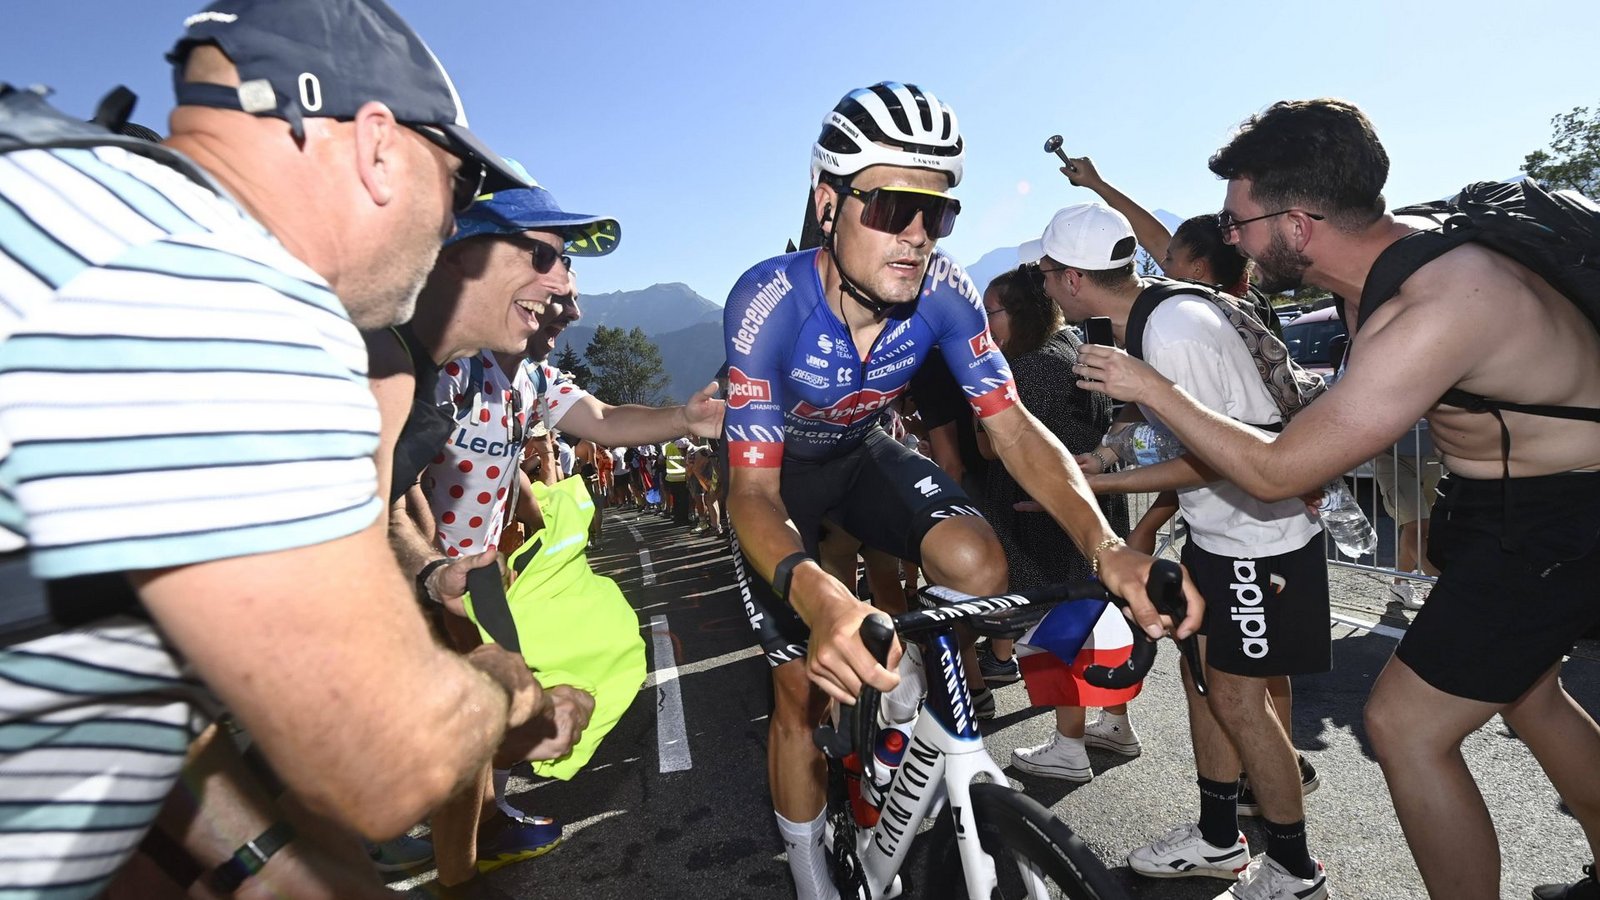 Für Alexander Krieger und sein Team ist die Tour de France jetzt schon ein Erfolg.Foto: imago//Nico Vereecken